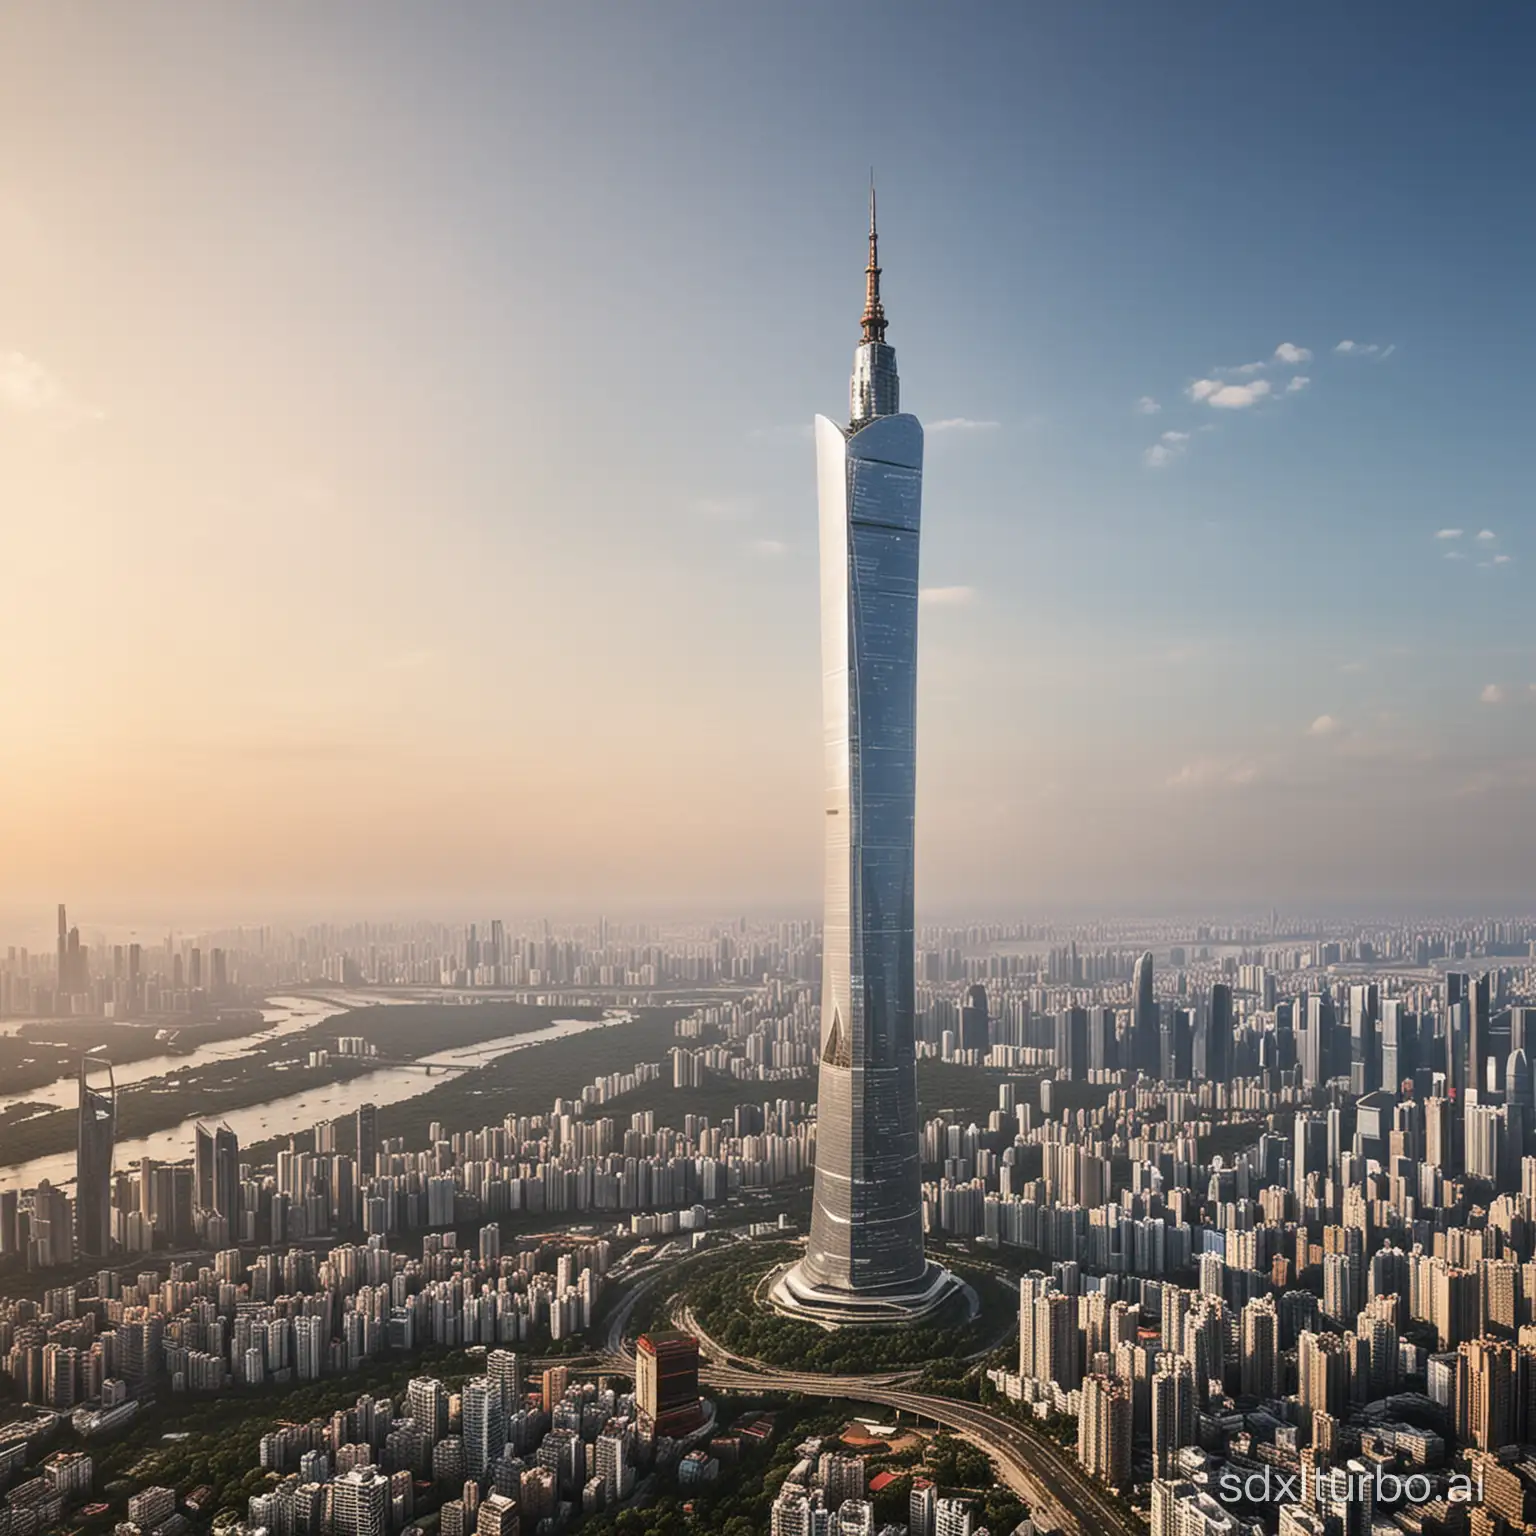 Guangzhou Tower in 100 years